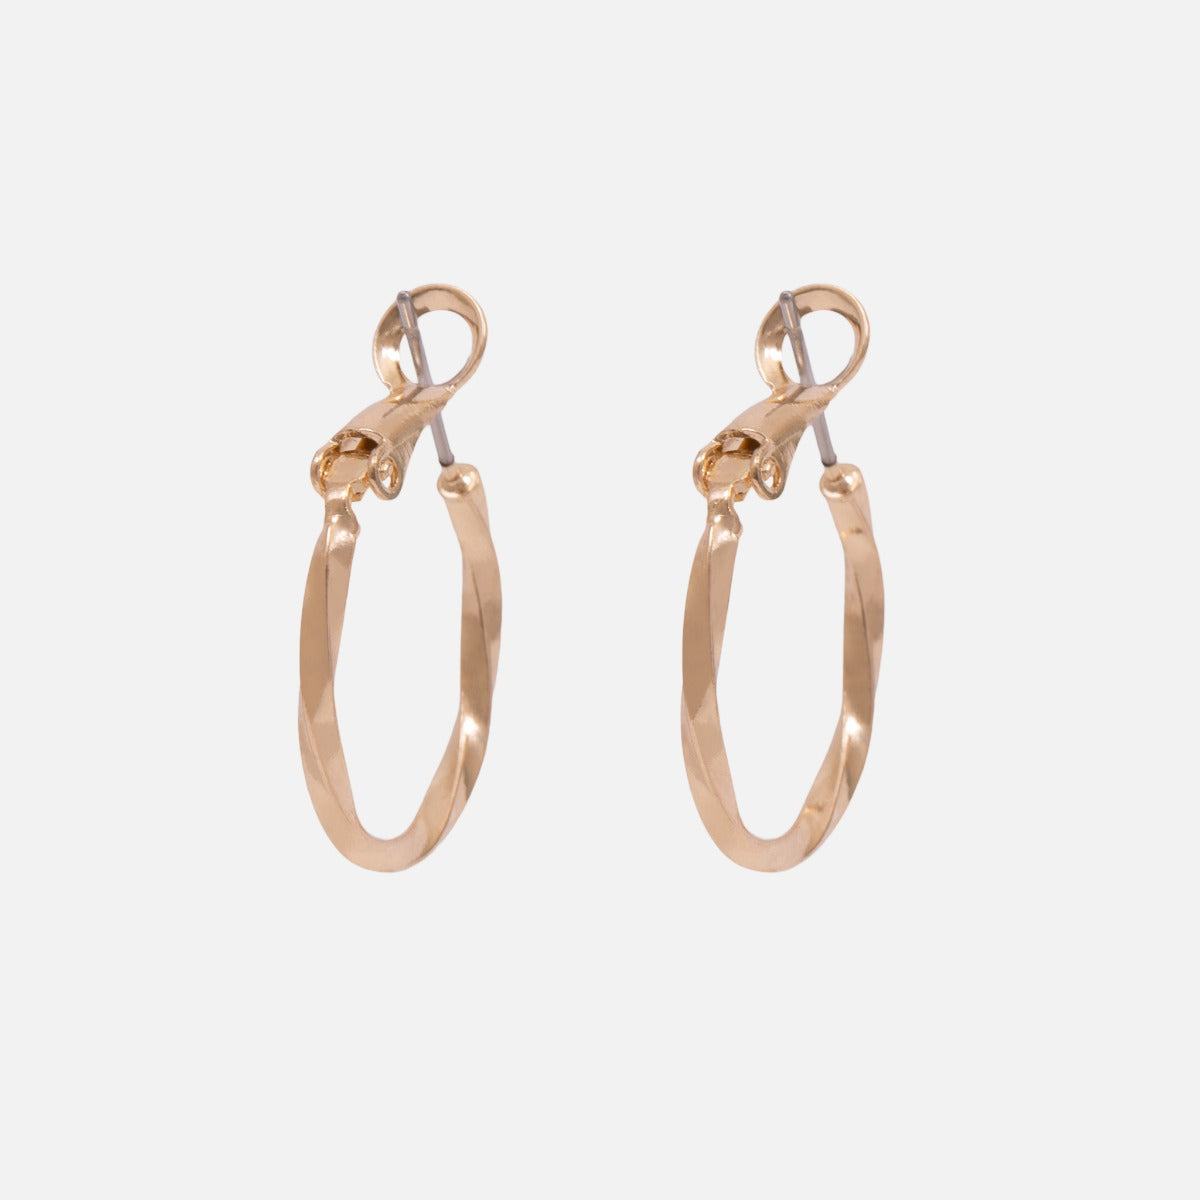 Duo de boucles d’oreilles anneaux dorées unies et tordues